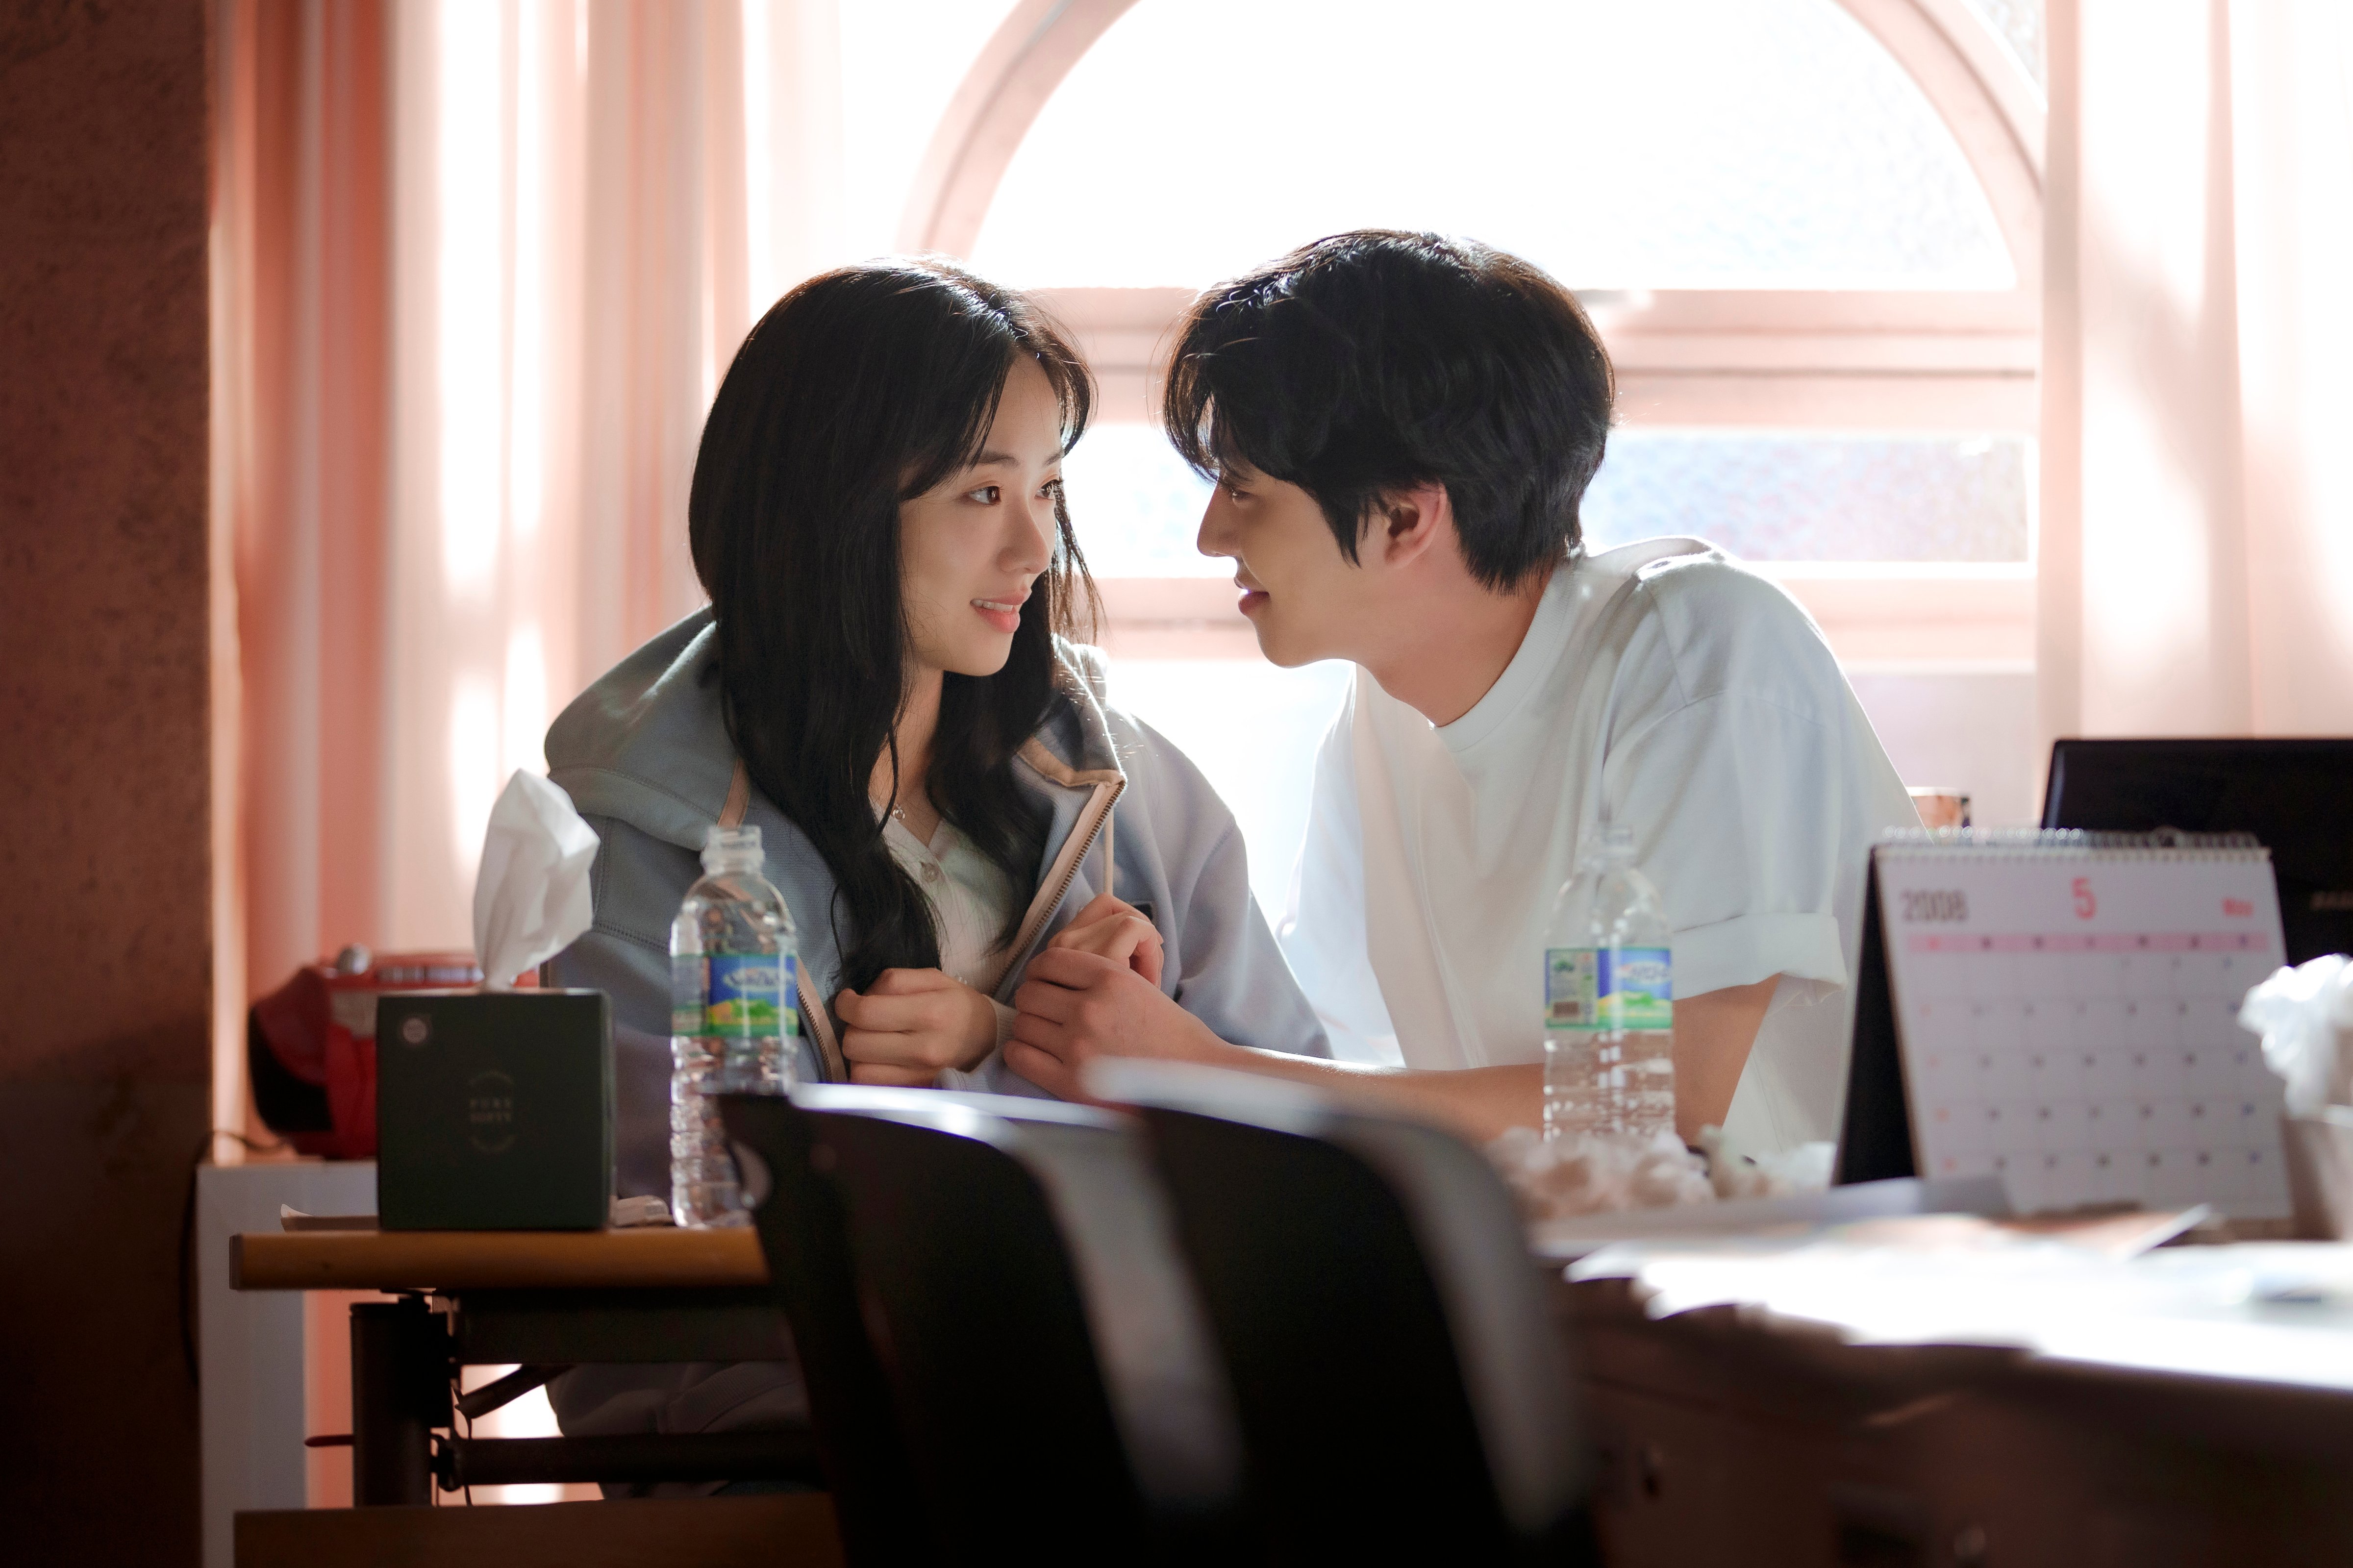 Jeon Yeo-been and Ahn Hyo-seop in <i></p>
<p></i> (ได้รับความอนุเคราะห์จาก Netflix) ” /></p>
<p> <i>เวลาเรียกคุณ</i></p>
<p>หากคุณเป็นแฟนของการเดินทางข้ามเวลาการสร้างละครเรื่องนี้ของไต้หวันในปี 2019 <em>สักวันหรือวันหนึ่ง</em> อาจจะเหมาะกับคุณ.  <i>ข้อเสนอทางธุรกิจ</i>, ร่วมมือกับ Jeon Yeo-Been จาก <i>Vincenzo</i> ในเรื่องนี้เกี่ยวกับผู้หญิงที่ย้อนเวลากลับไปและพบกับผู้ชายคนหนึ่งที่ดูเหมือนคนรักของเธอที่ล่วงลับไปแล้ว<i>.</i> การแสดงไต้หวันดั้งเดิมนำไปสู่การท่องเที่ยวสำหรับสถานที่ถ่ายทำหลายแห่งใน Tainan และข่าวเกี่ยวกับการรีเมคเกาหลีได้ให้การสนับสนุนเพิ่มเติมแก่พวกเขาแม้ว่าจะมีการถ่ายทำซีรีส์ใหม่ในเกาหลี.</p>
<h2><span id=